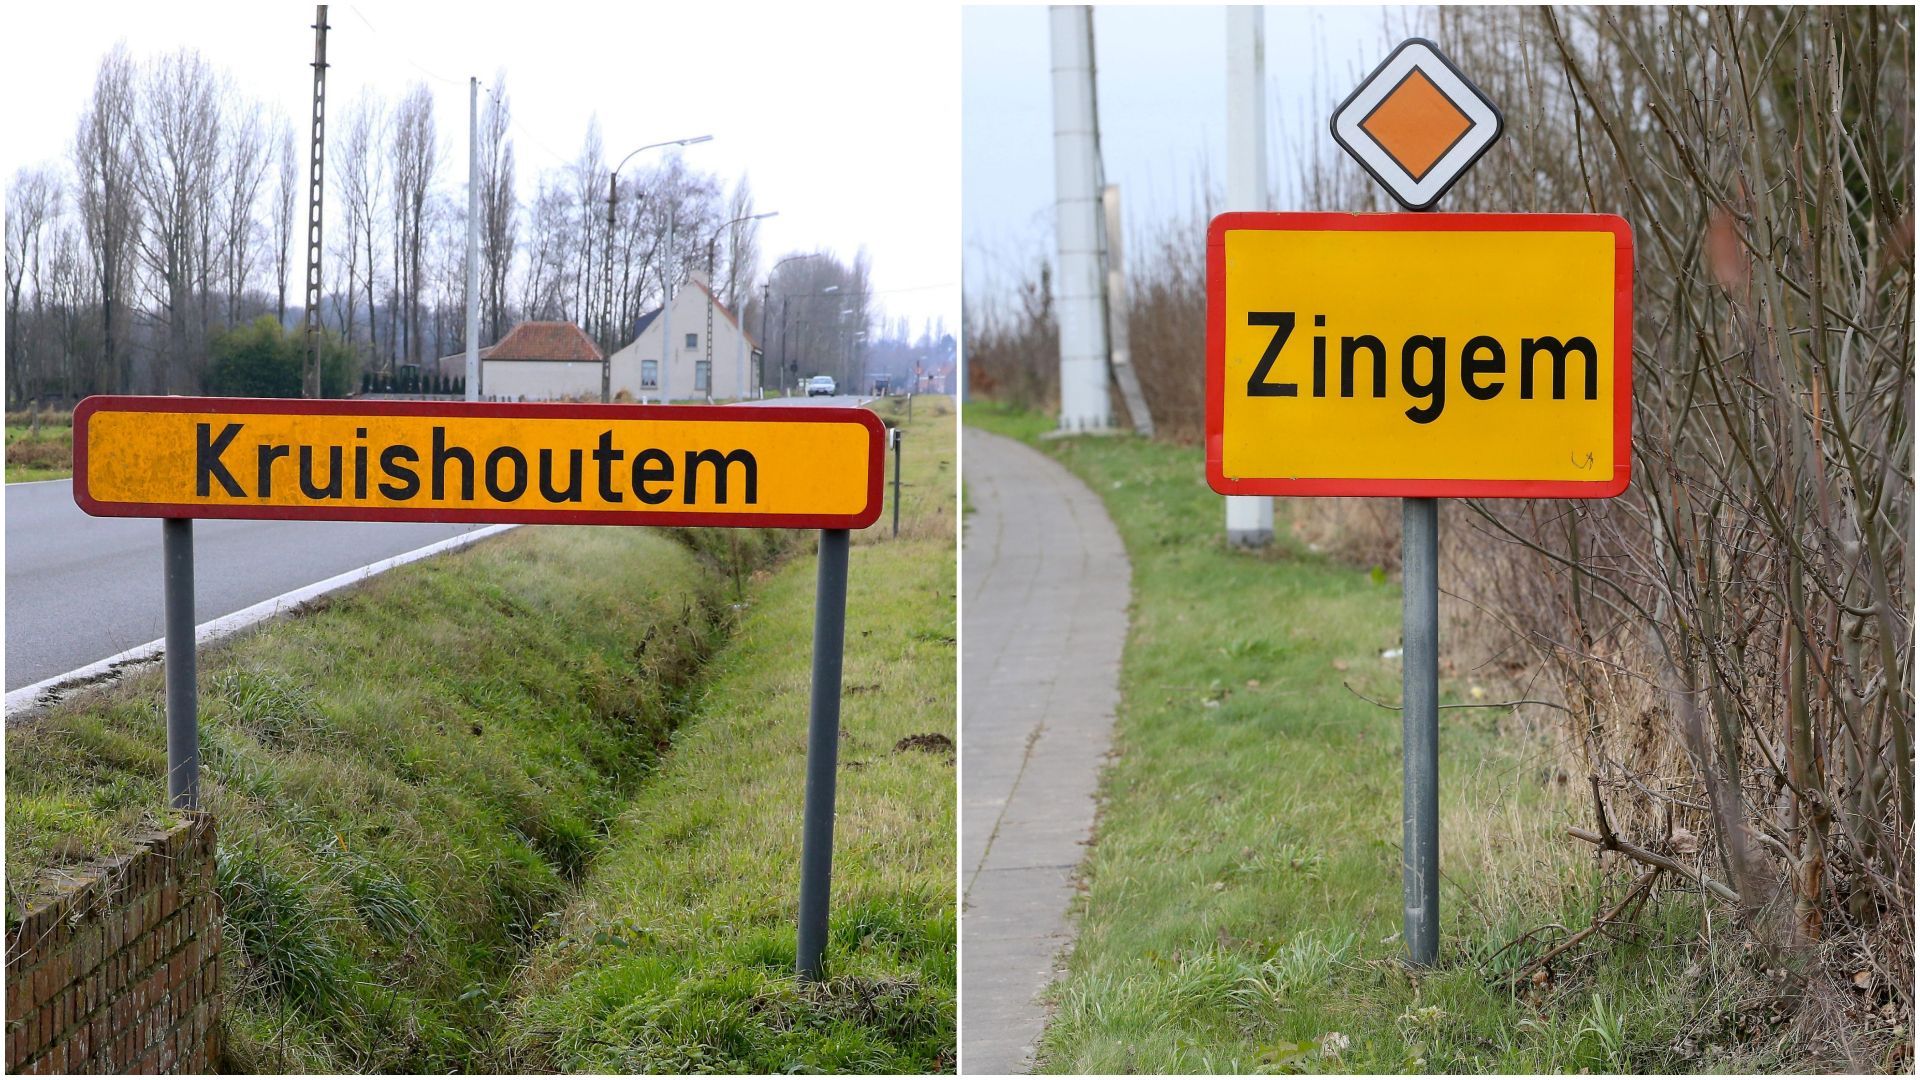 Les communes flamandes de Kruishoutem et de Zingem vont fusionner et s'appeler Kruisem.